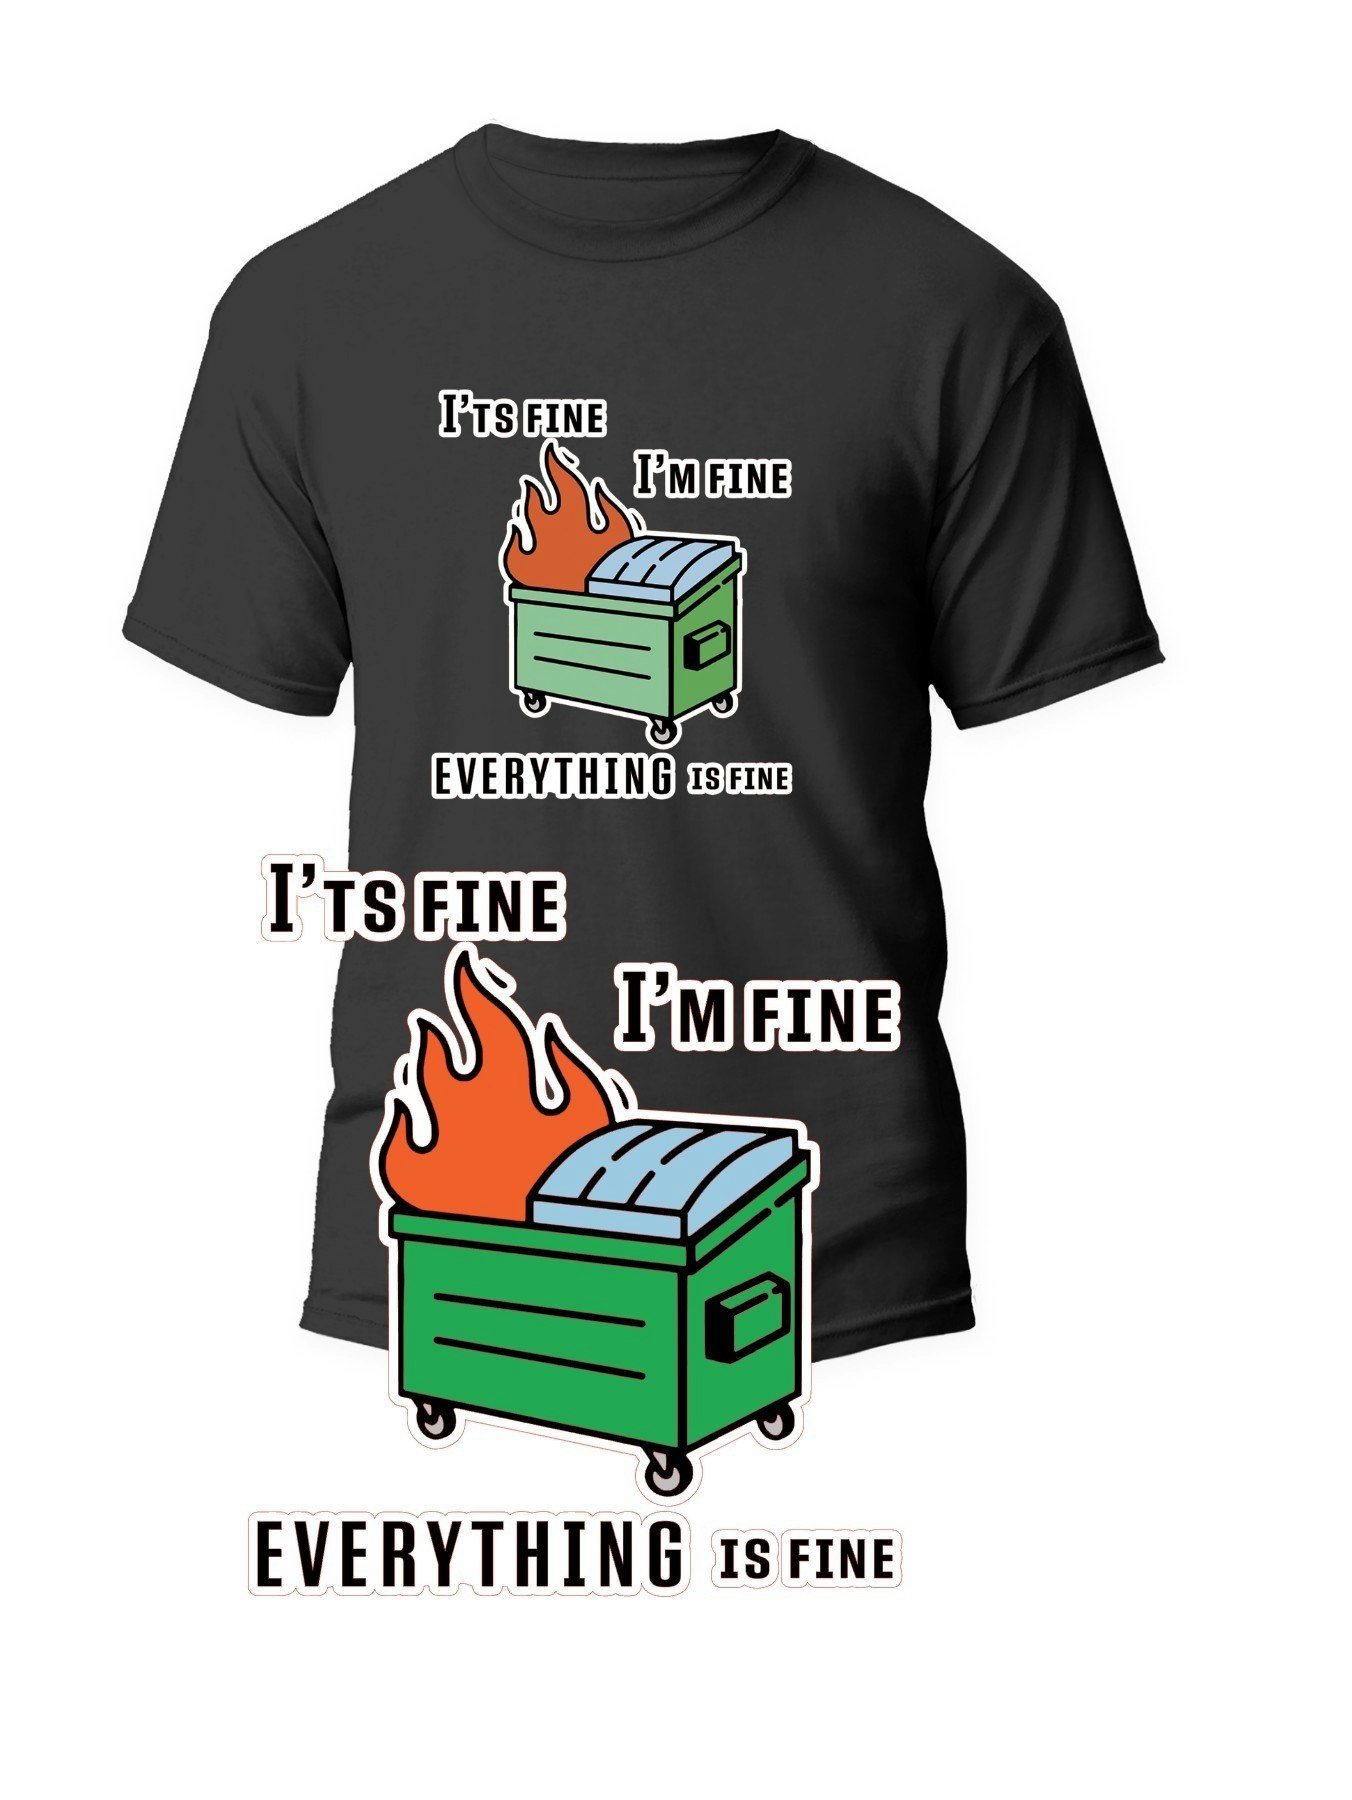 Dumpster Fire t-shirt